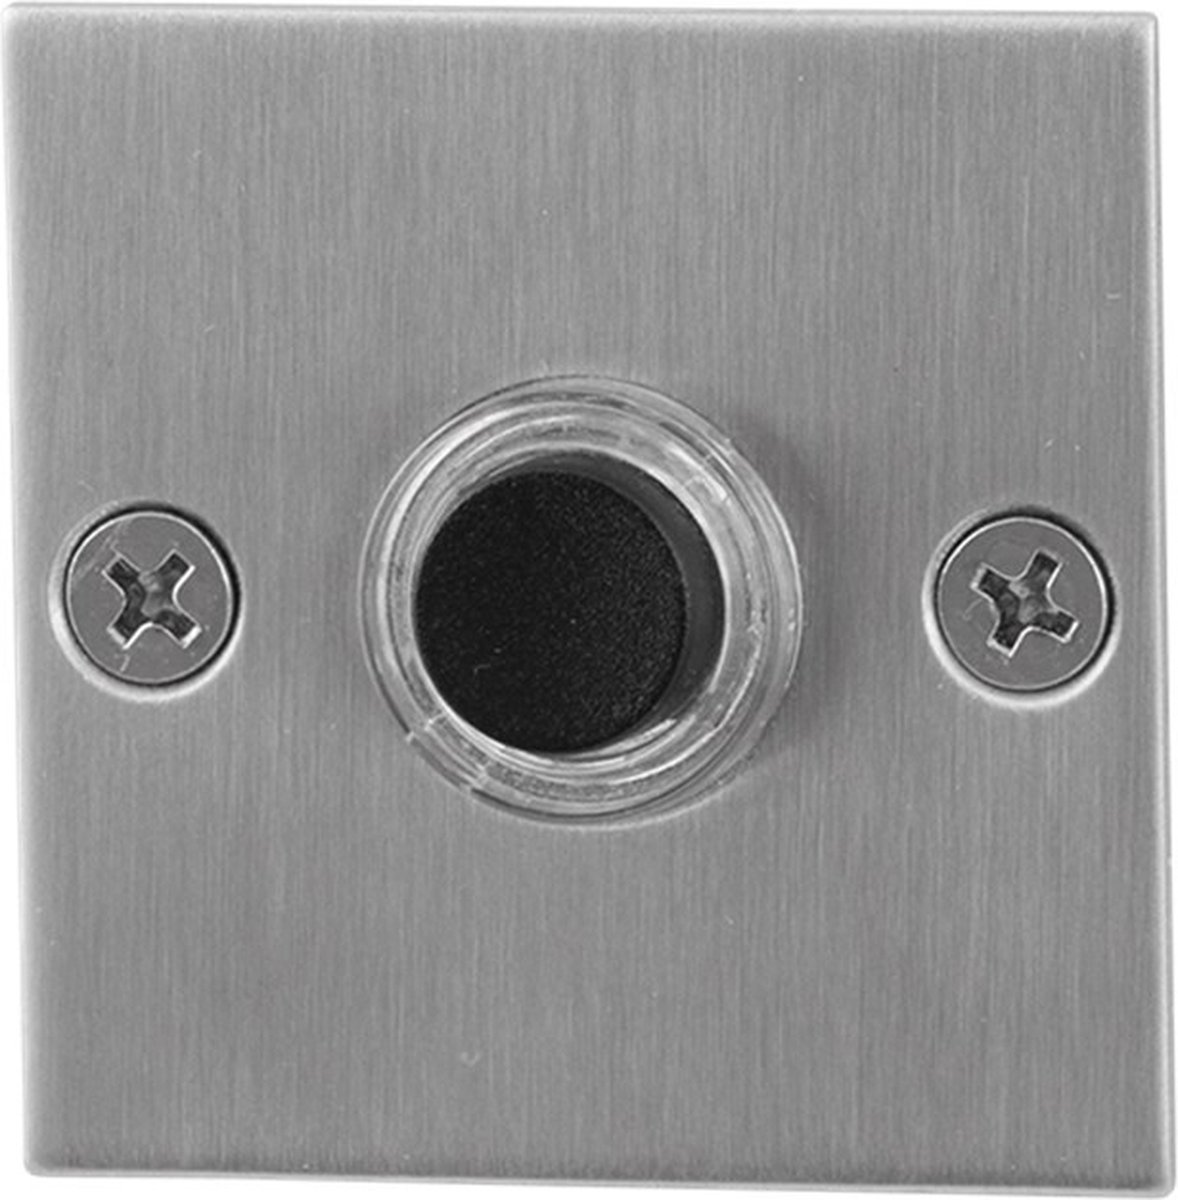 GPF9826.08 deurbel met zwarte button vierkant 50x50x2 mm RVS geborsteld